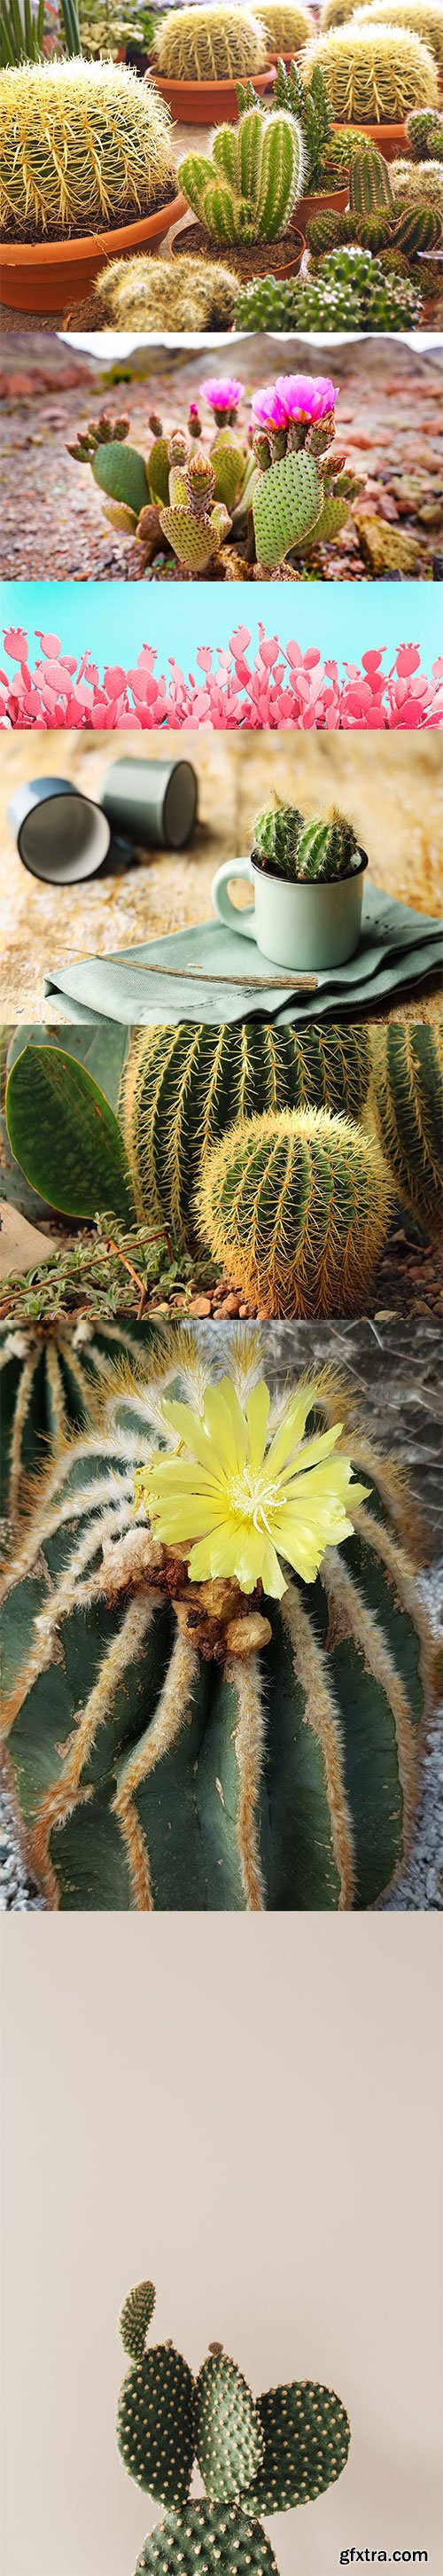 Photo - Cactus - 14xJPGs